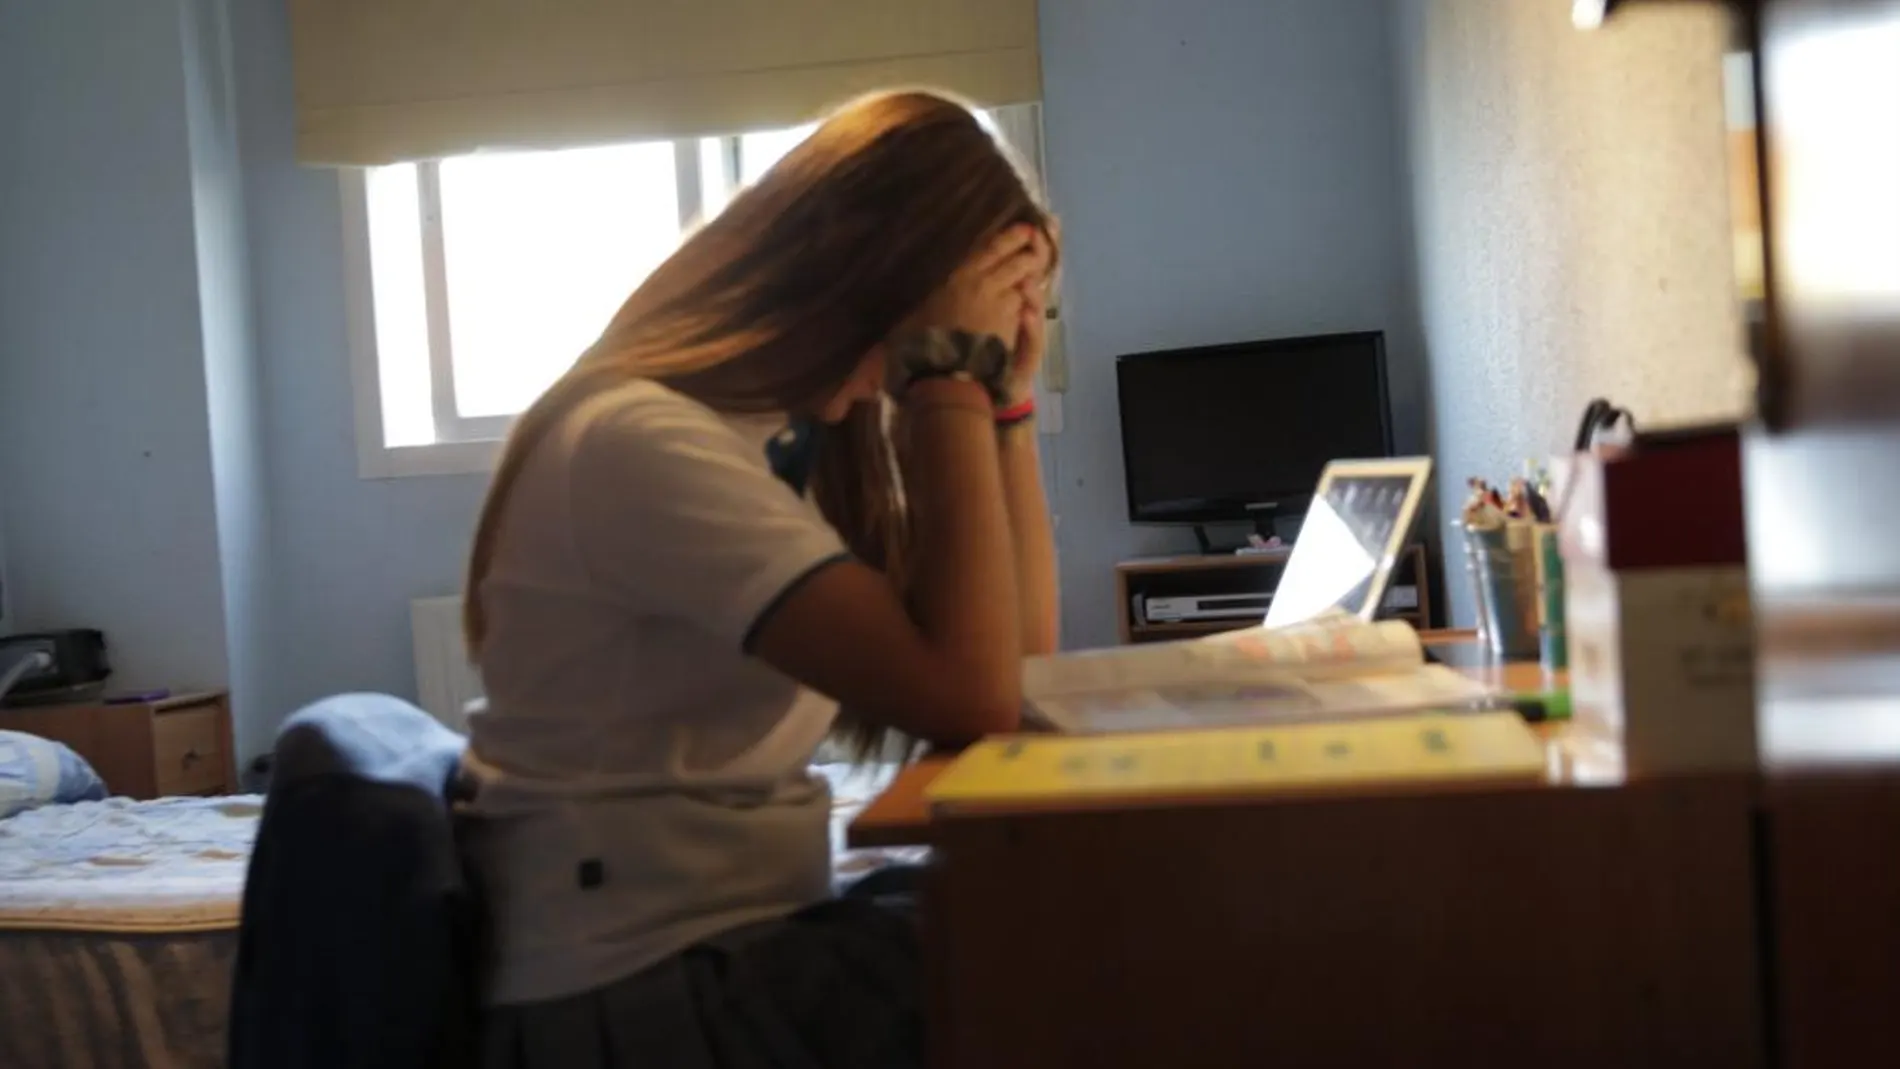 El once por ciento de los niños murcianos asegura haber sufrido acoso en las aulas